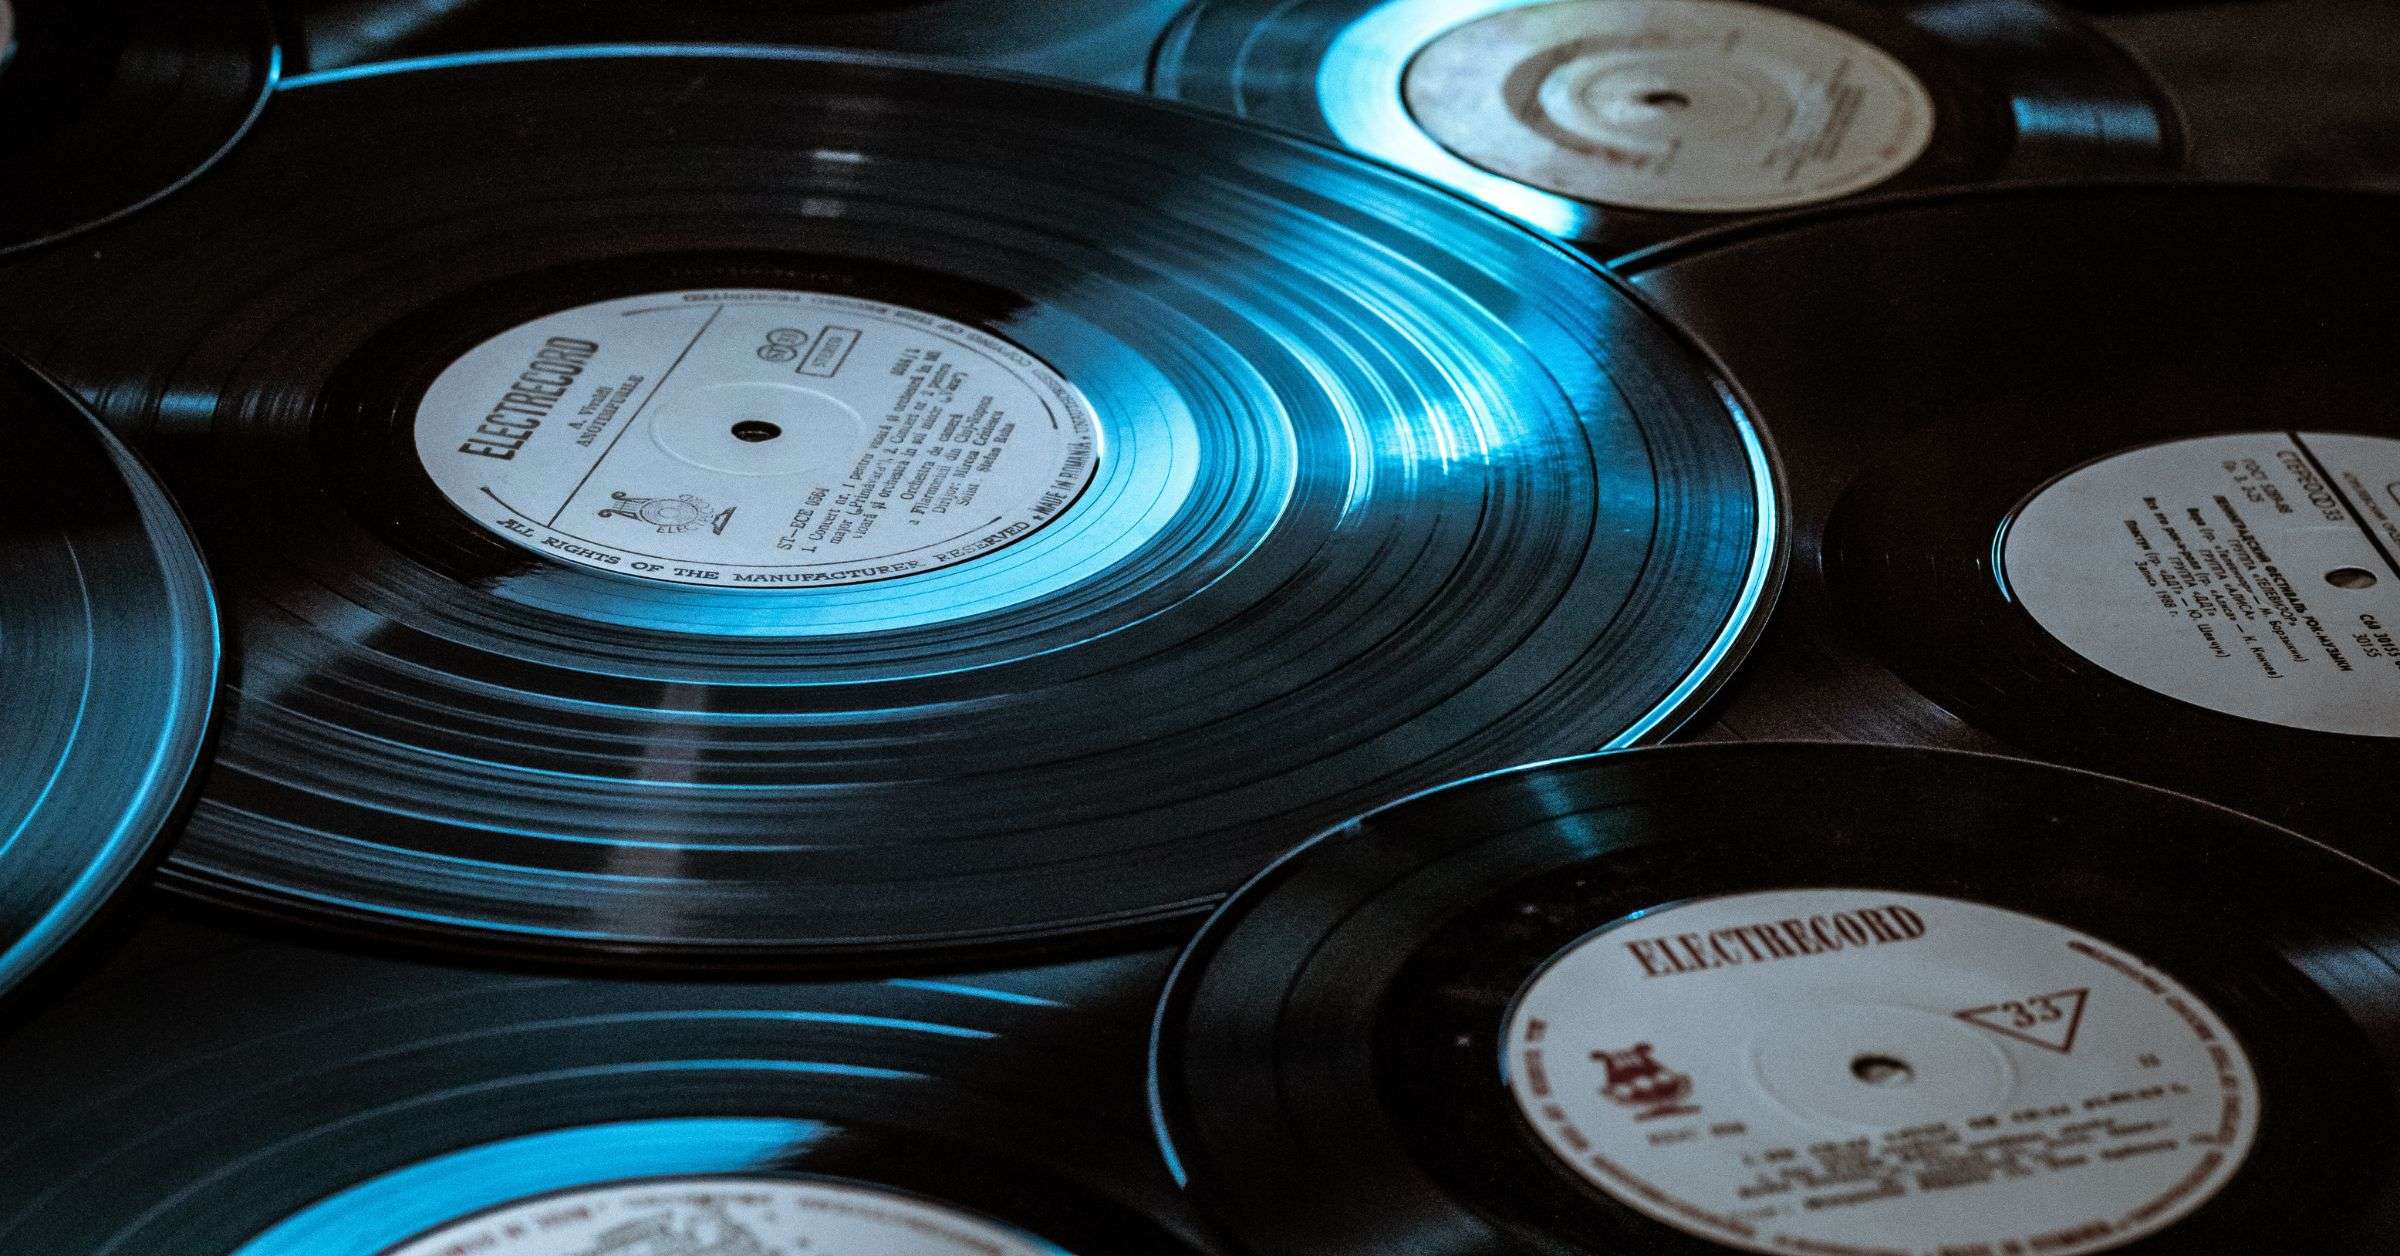 Types of vinyl records